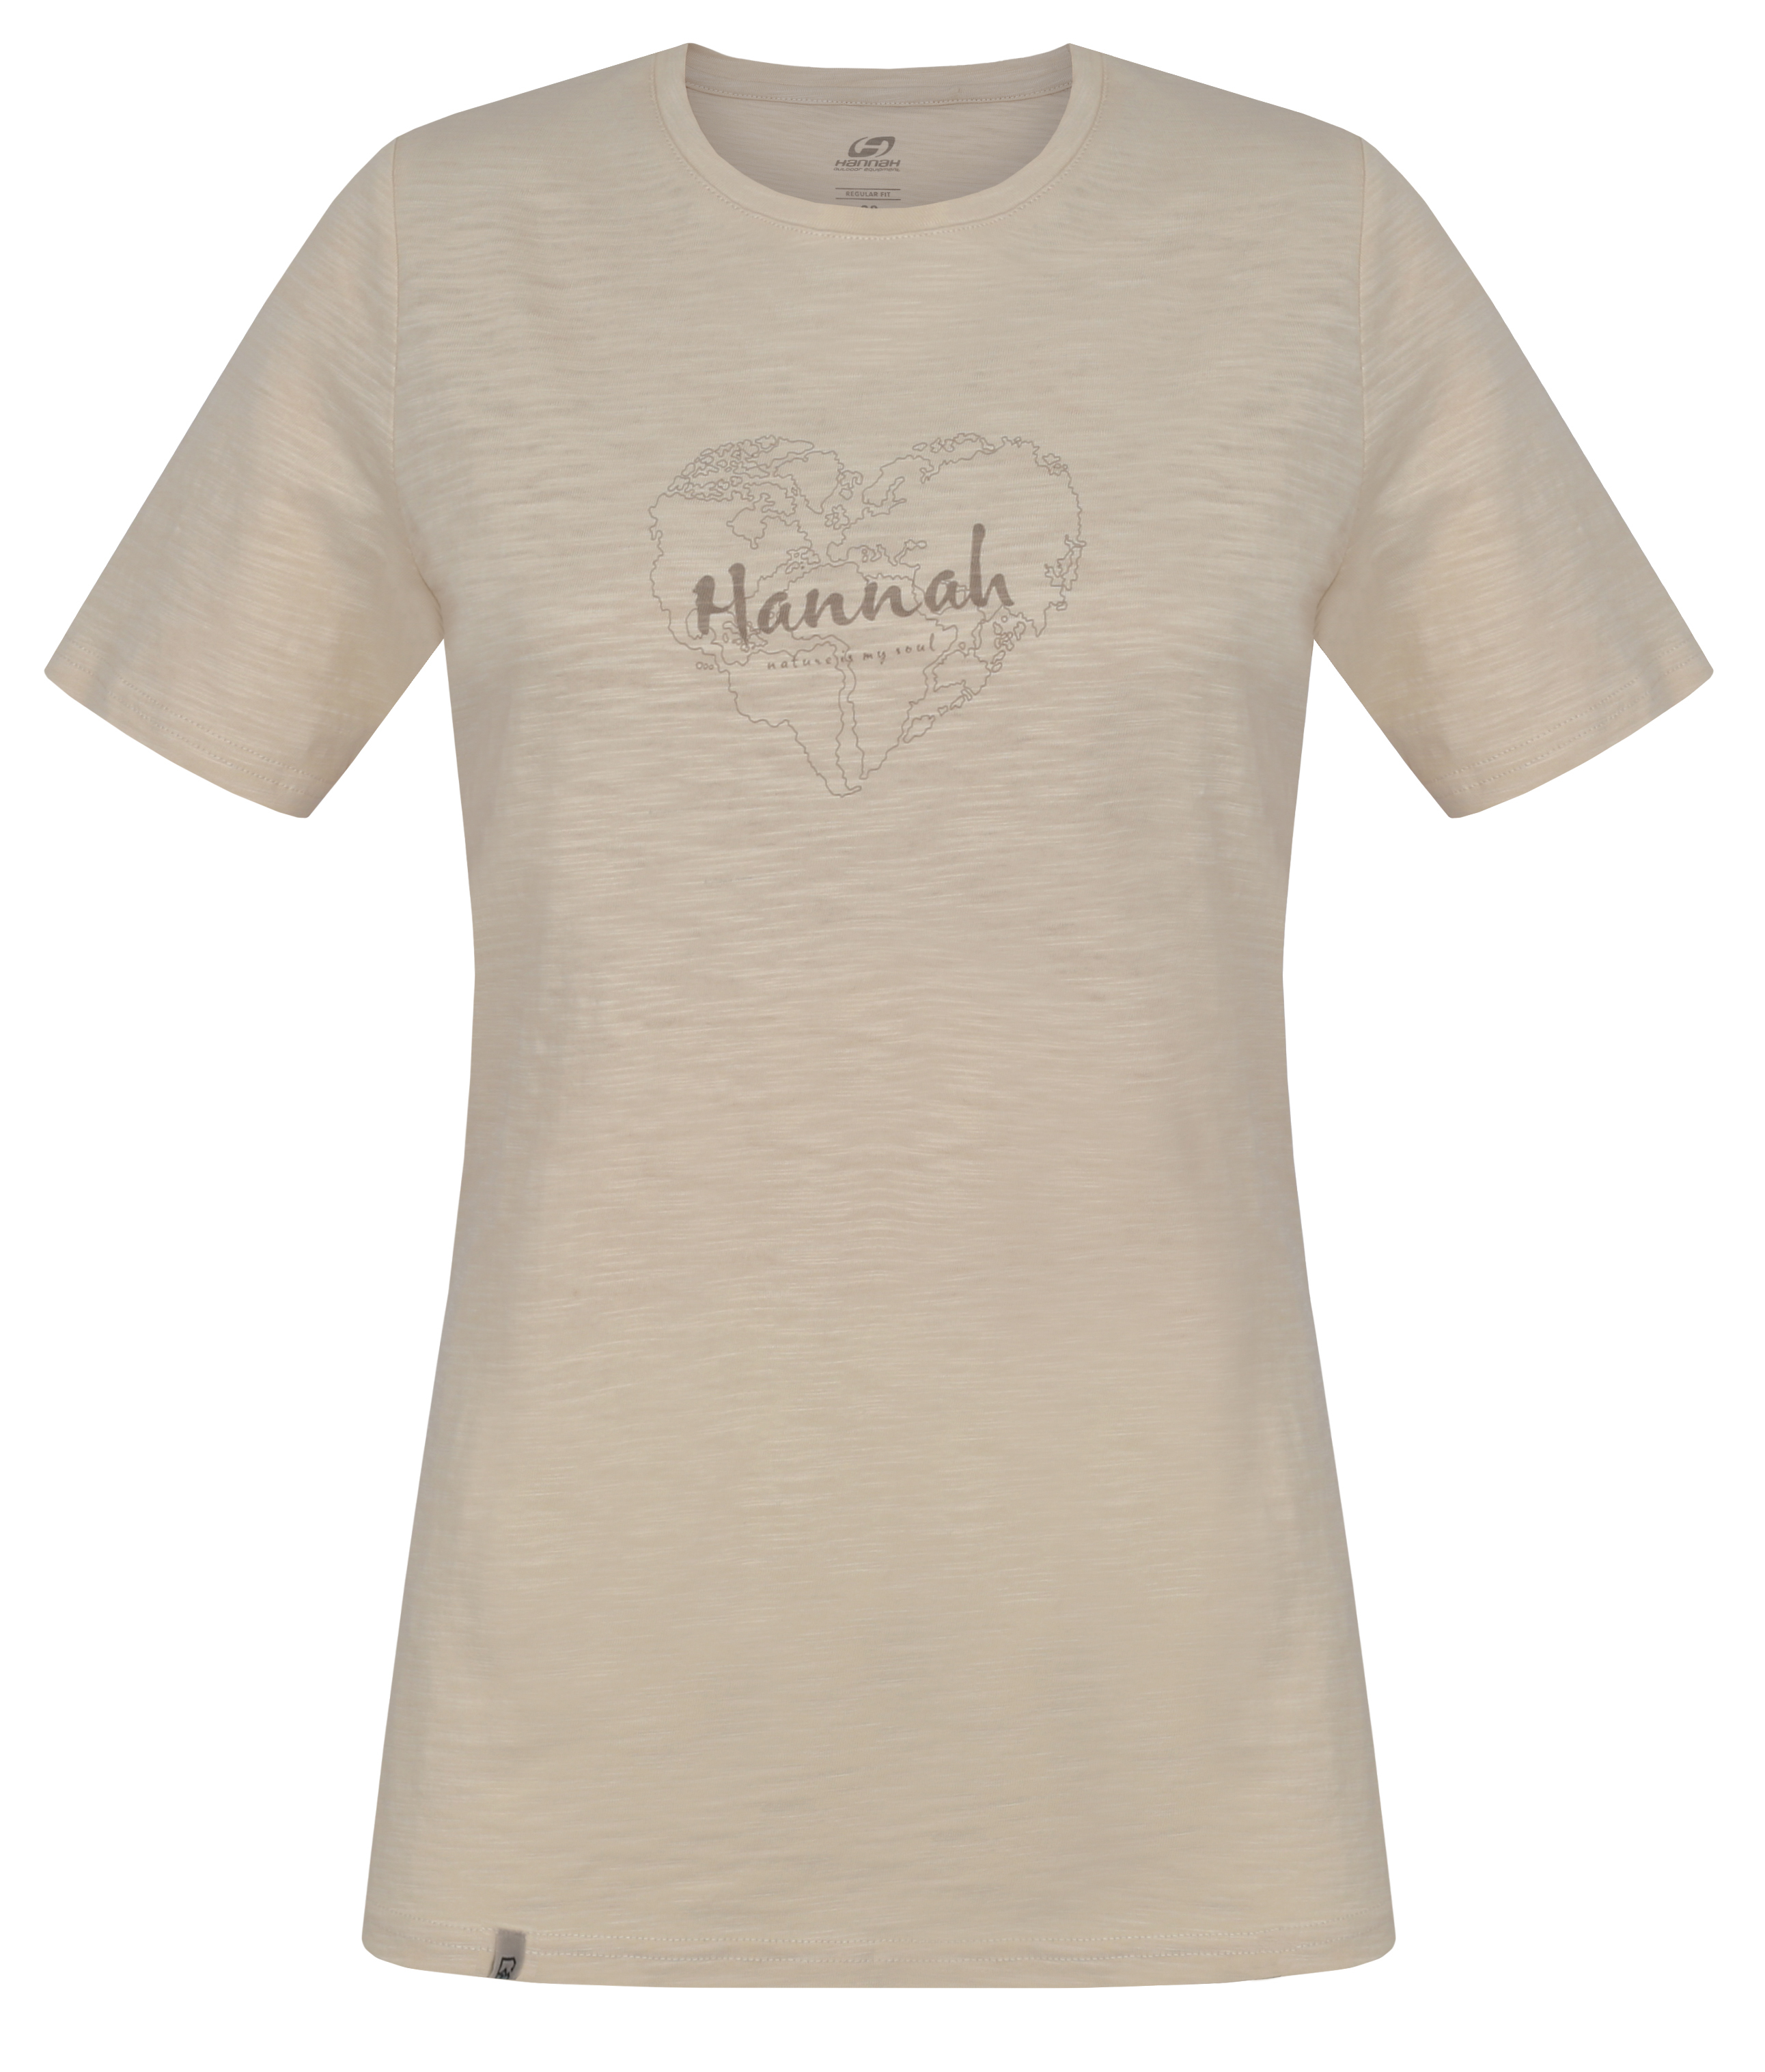 Hannah KATANA creme brulee Velikost: 36 dámské tričko s krátkým rukávem